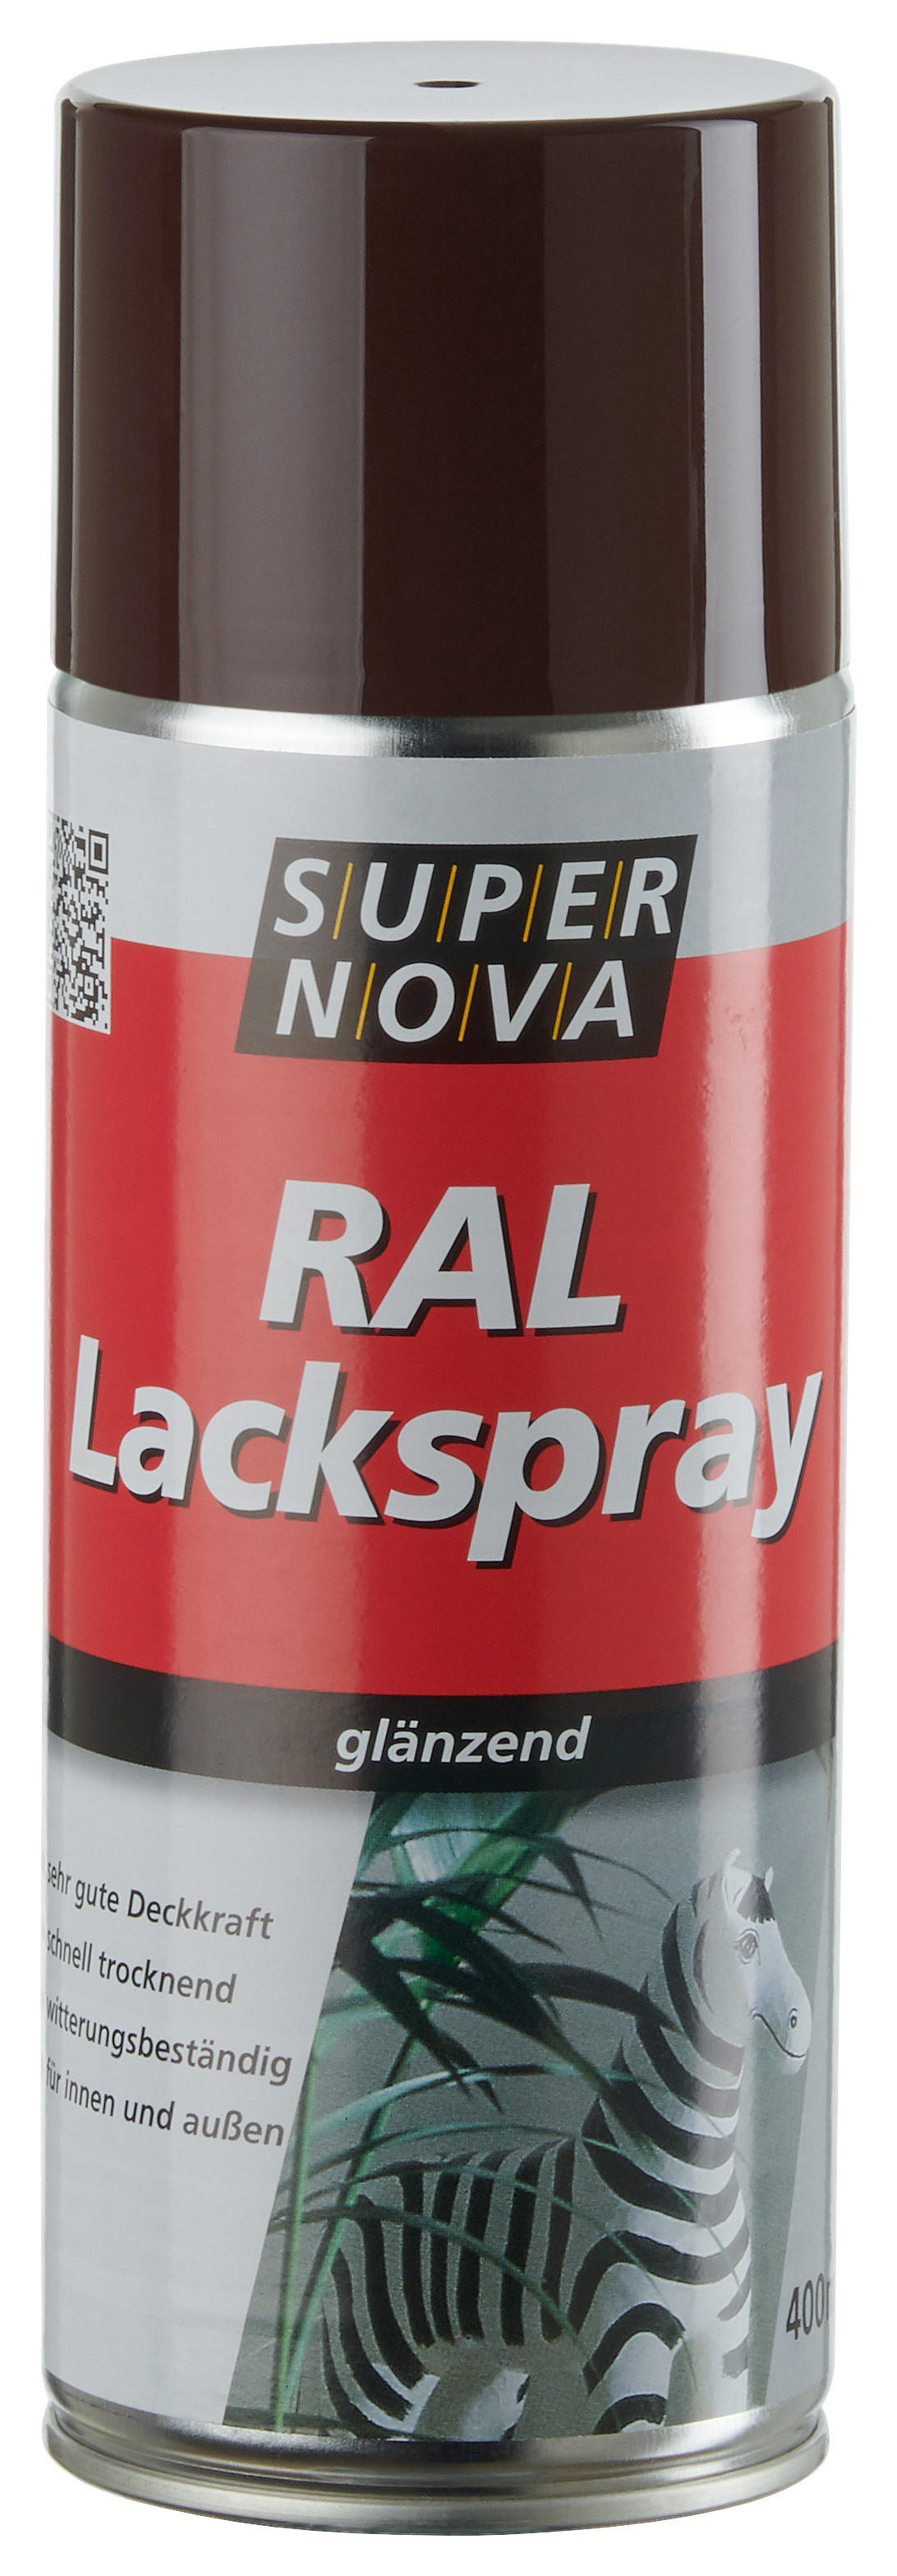 Super-Nova Lackspray schokobraun glänzend ca. 0,4 l Lackspray 400ml - schokobraun (400ml)